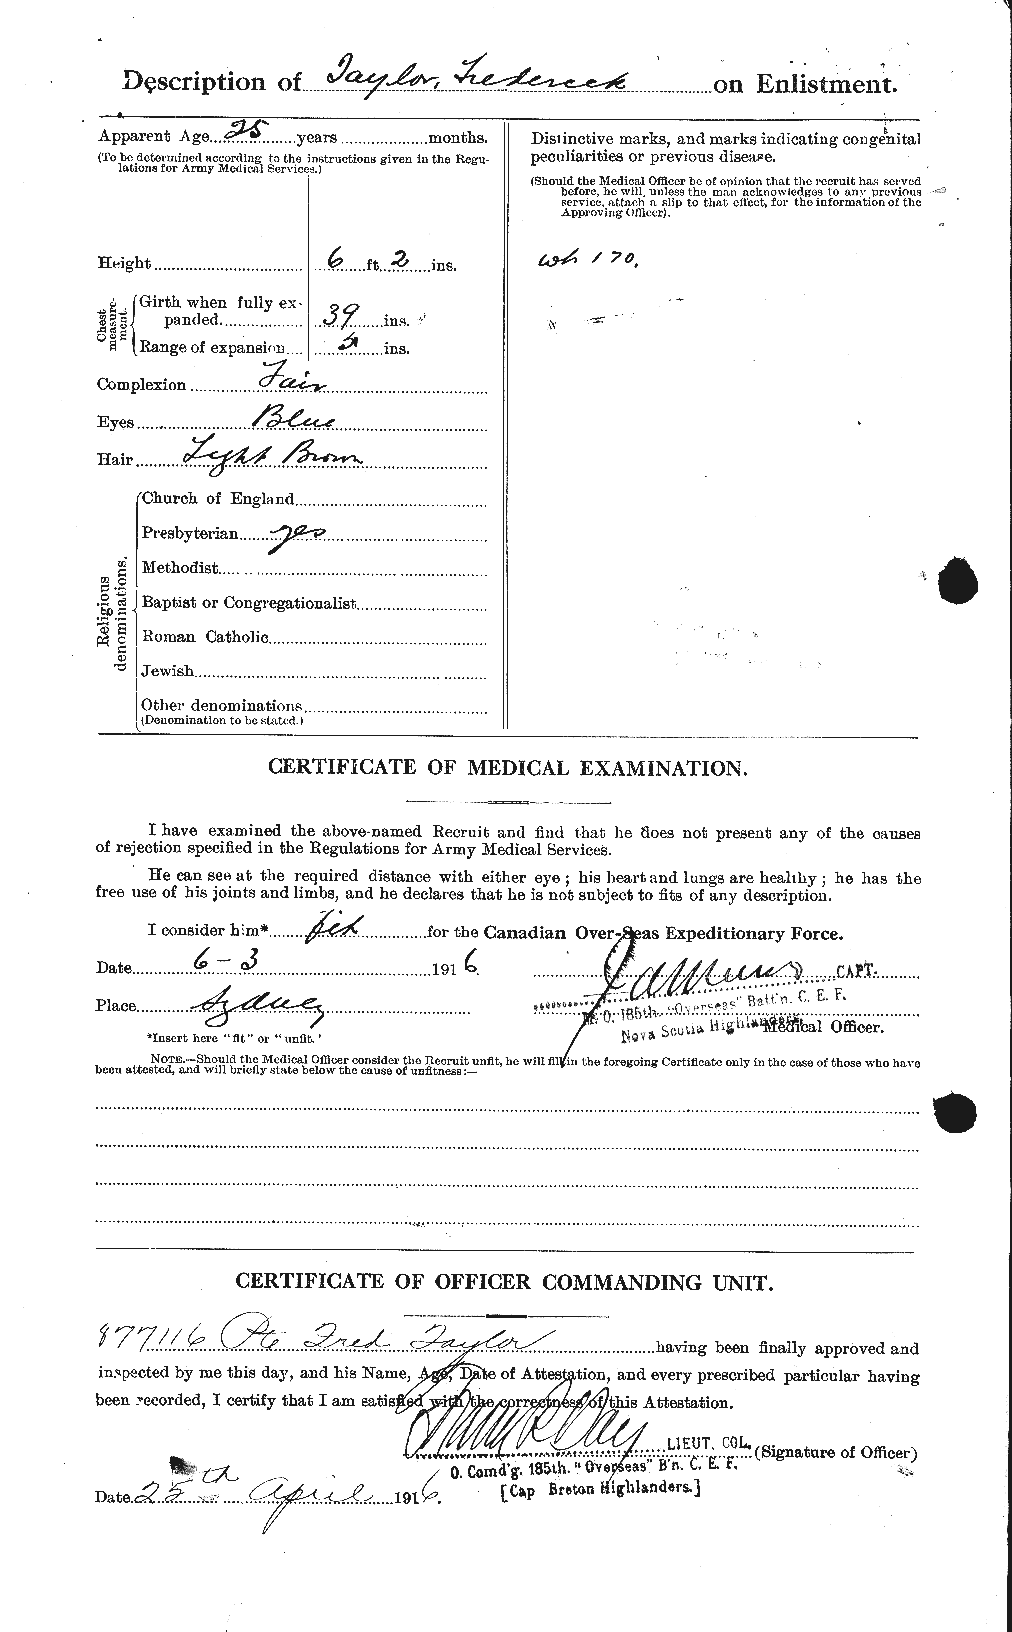 Dossiers du Personnel de la Première Guerre mondiale - CEC 625762b